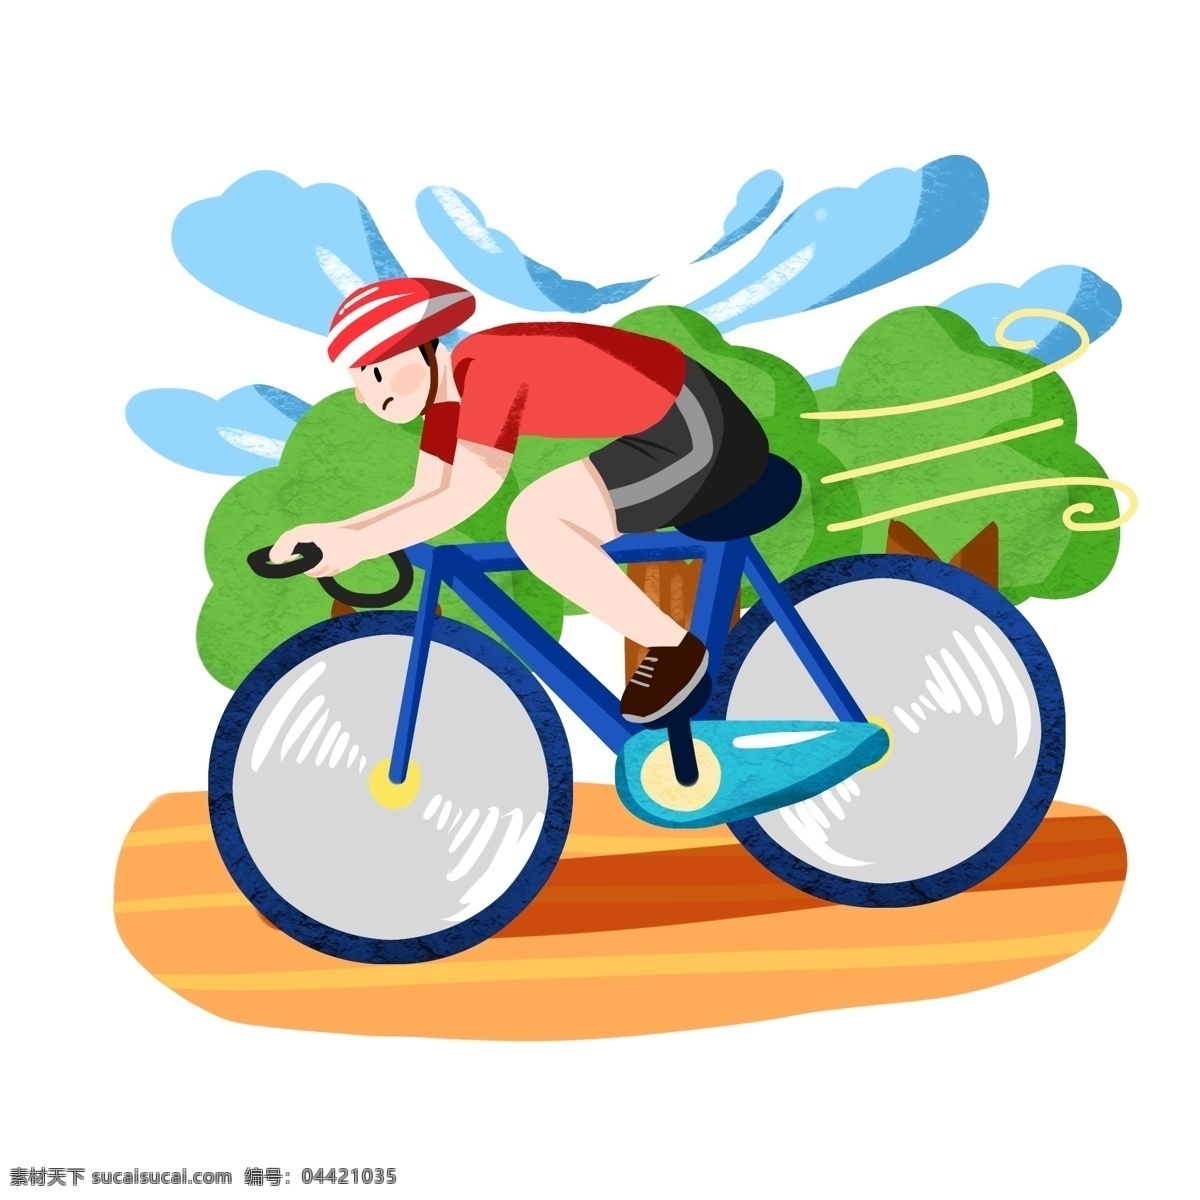 骑车 健身 小 男孩 运动健身插画 骑车健身 健身的小男孩 骑车的小男孩 卡通人物 蓝色的单车